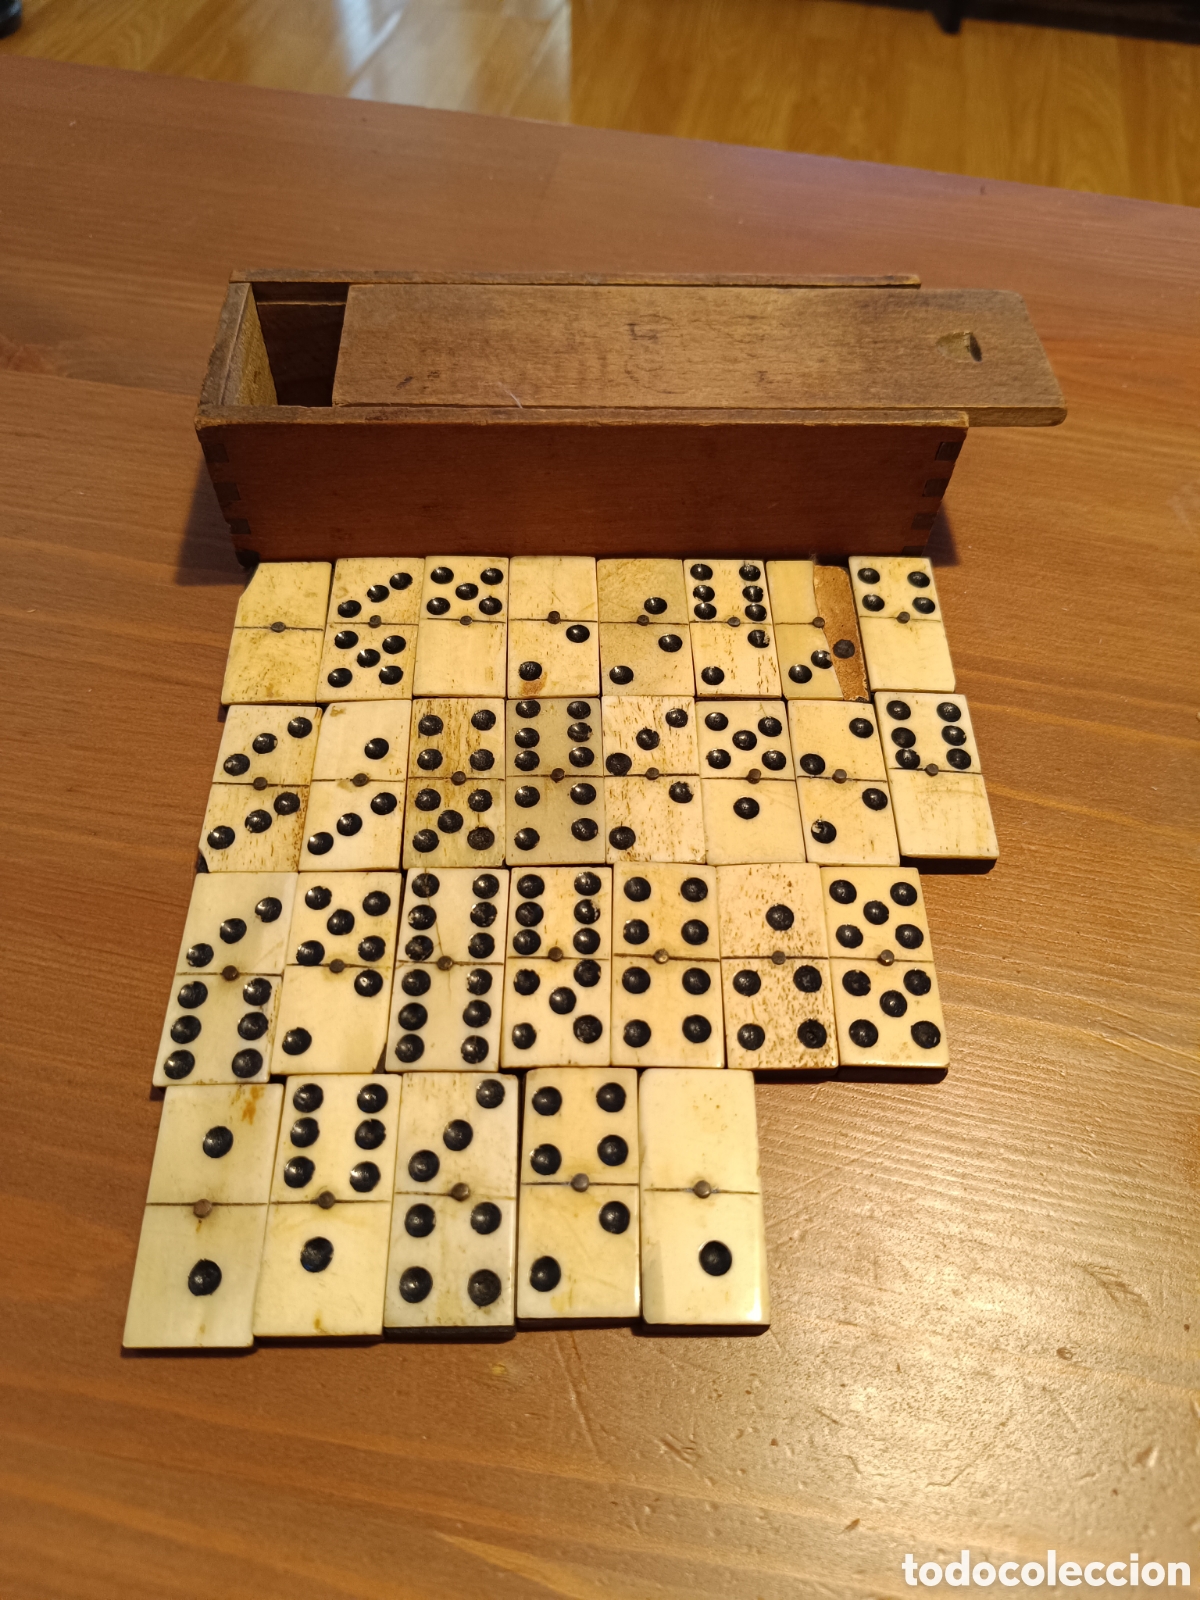 antiguo juego de dominó, de hueso - Compra venta en todocoleccion